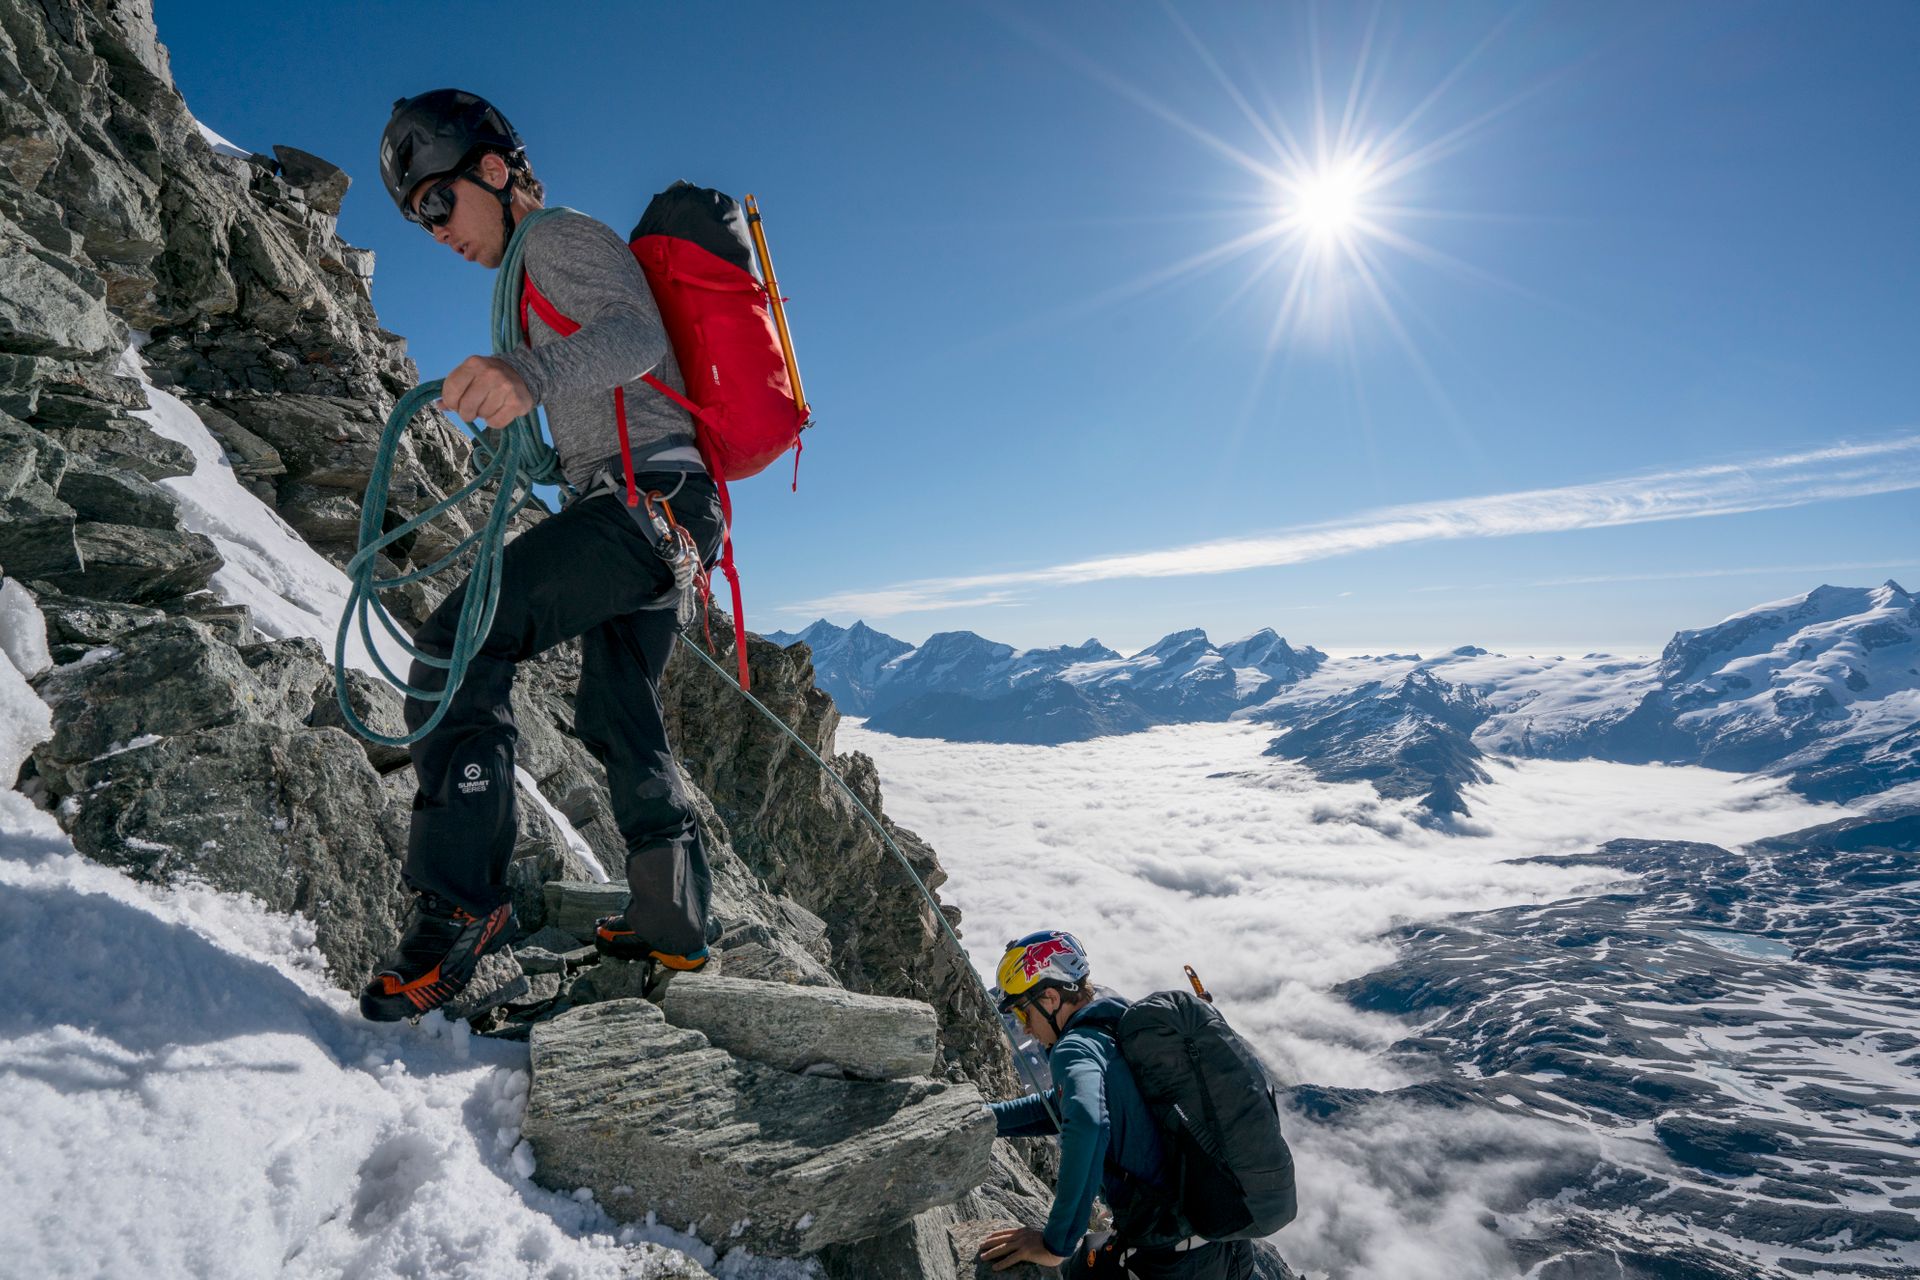 Il freeskier Jérémie Heitz e l’alpinista Sam Anthamatten durante la reale scalata del monte Cervino che ha ispirato Red Bull Svizzera